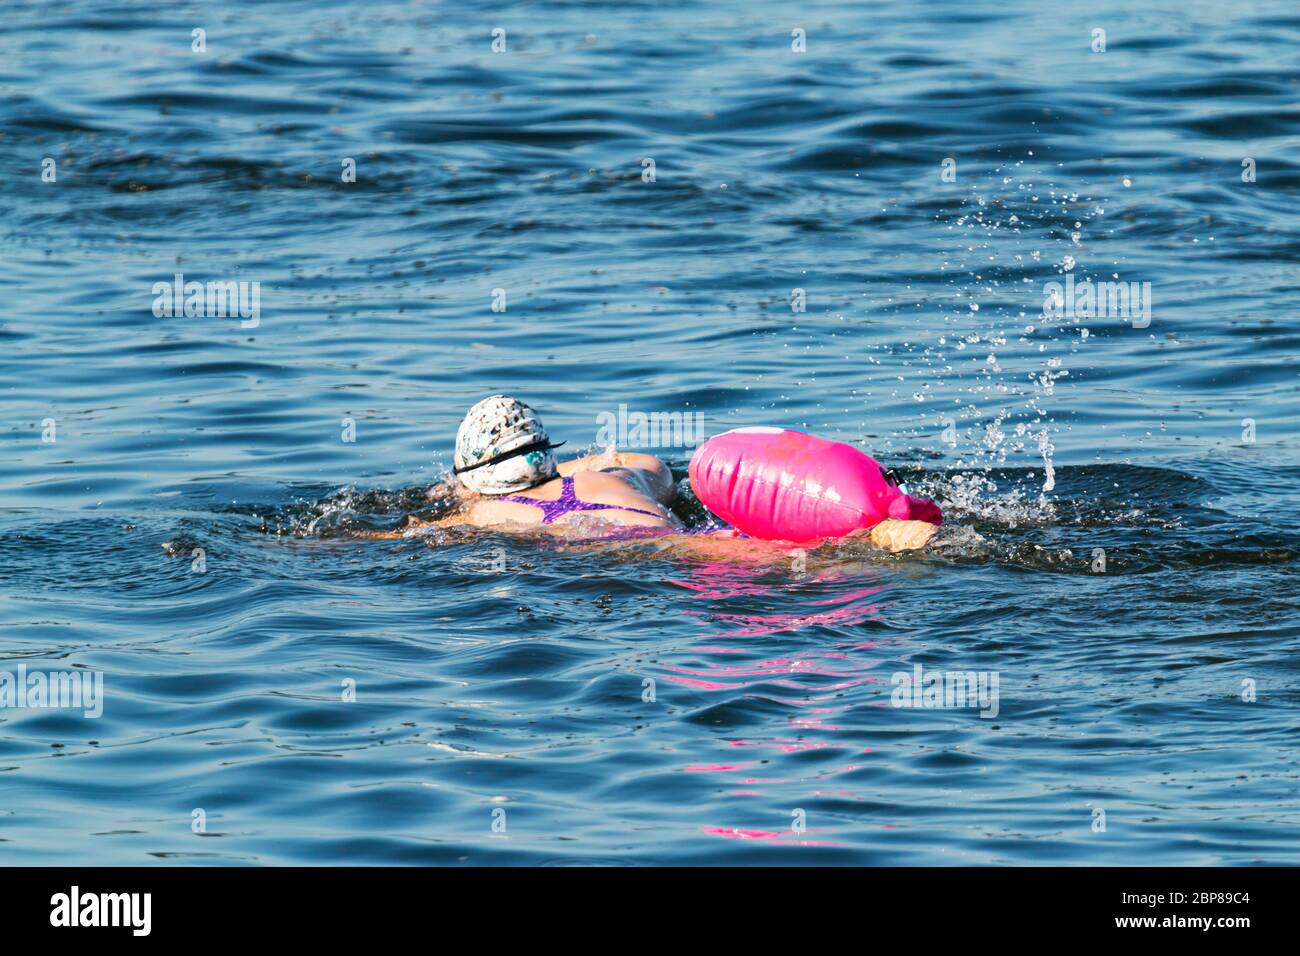 Una donna che si allenano per un triathlon sta nuotando in acqua blu con un dispositivo di galleggiamento rosa fissato alla vita per la sicurezza. Foto Stock